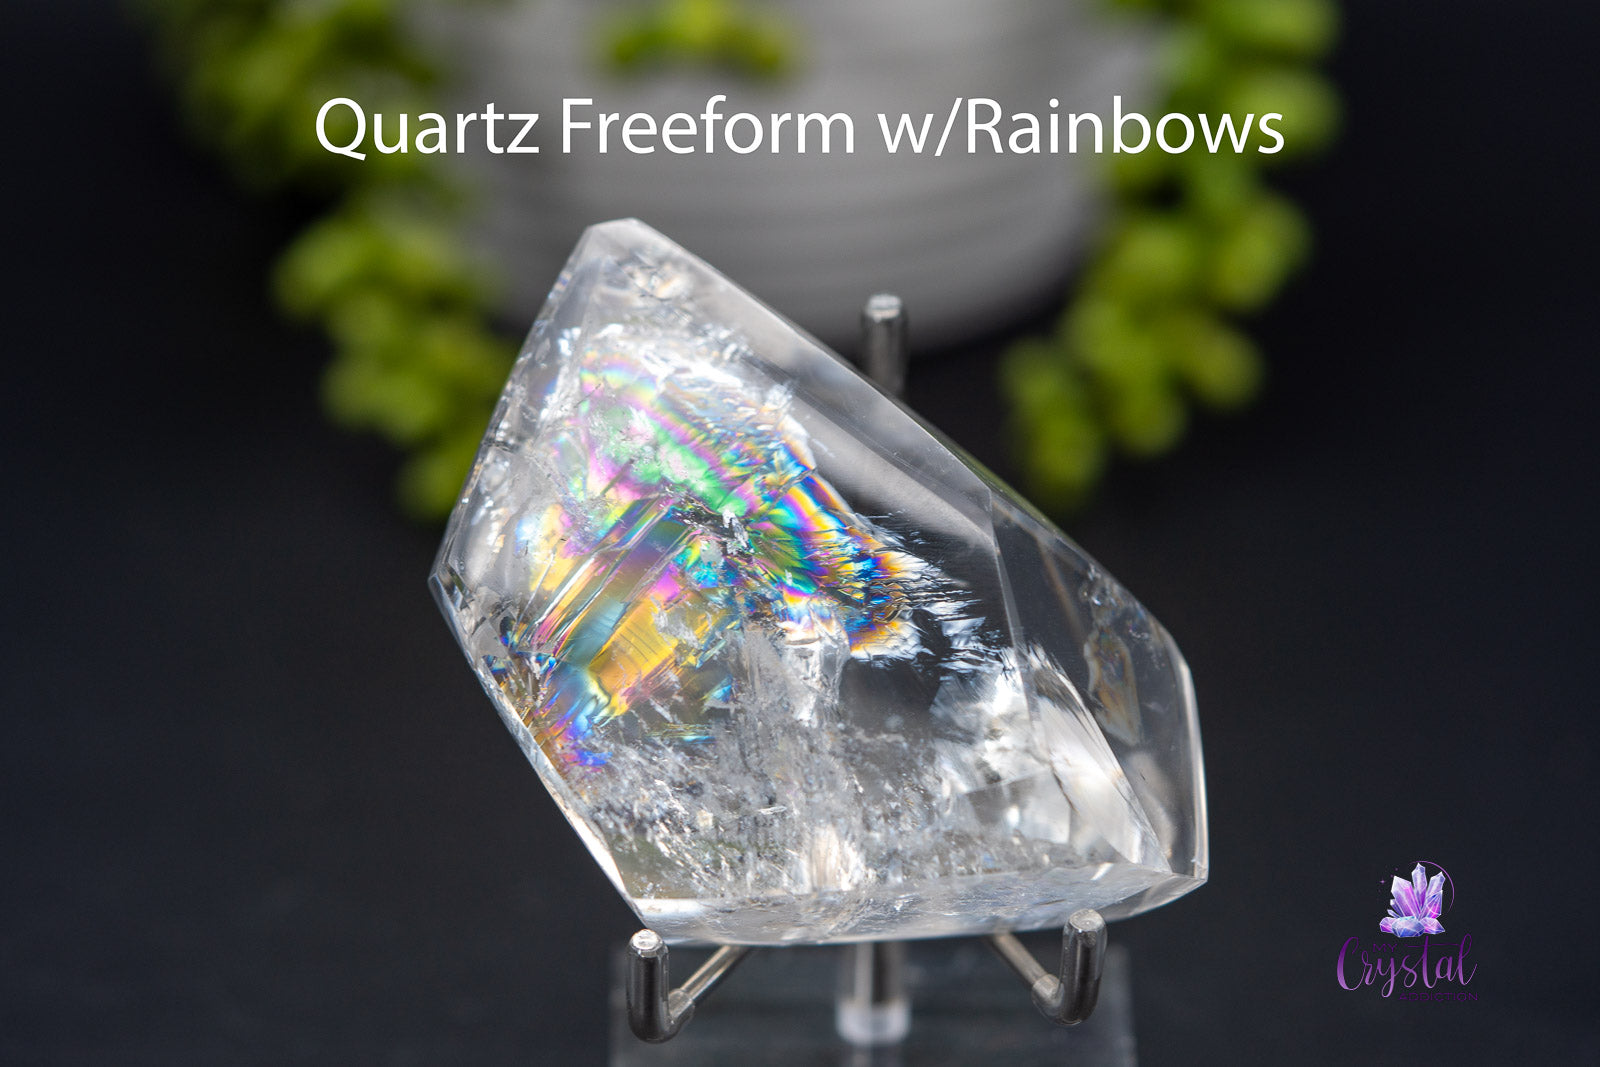 Quartz Freeform w/Rainbows 2.6" x 2.2"/66mm x 55mm - My Crystal Addiction